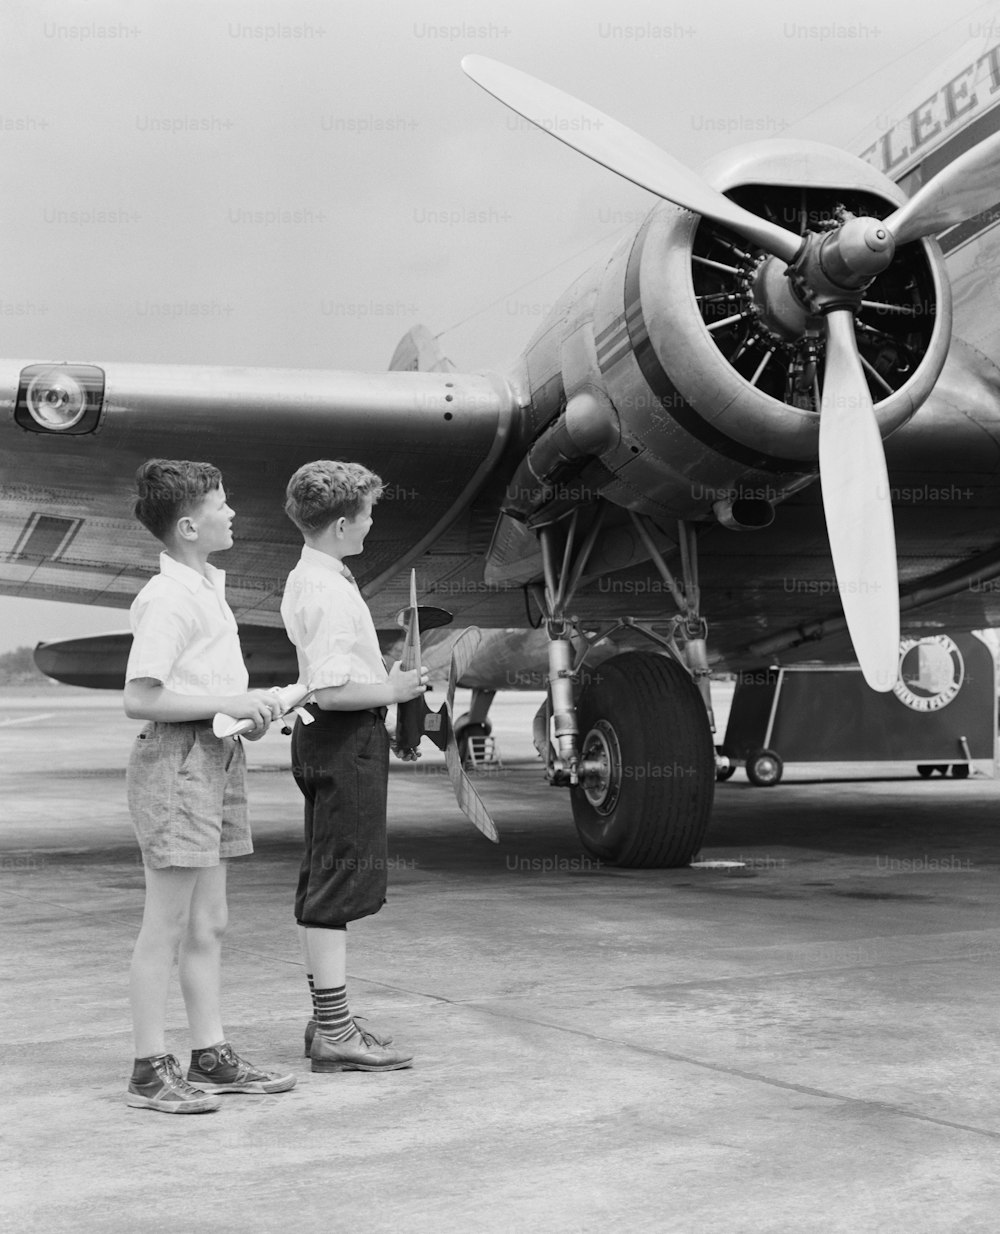 ESTADOS UNIDOS - CIRCA 1940s: Dos niños de pie junto a un avión de hélice, sosteniendo un avión de juguete.